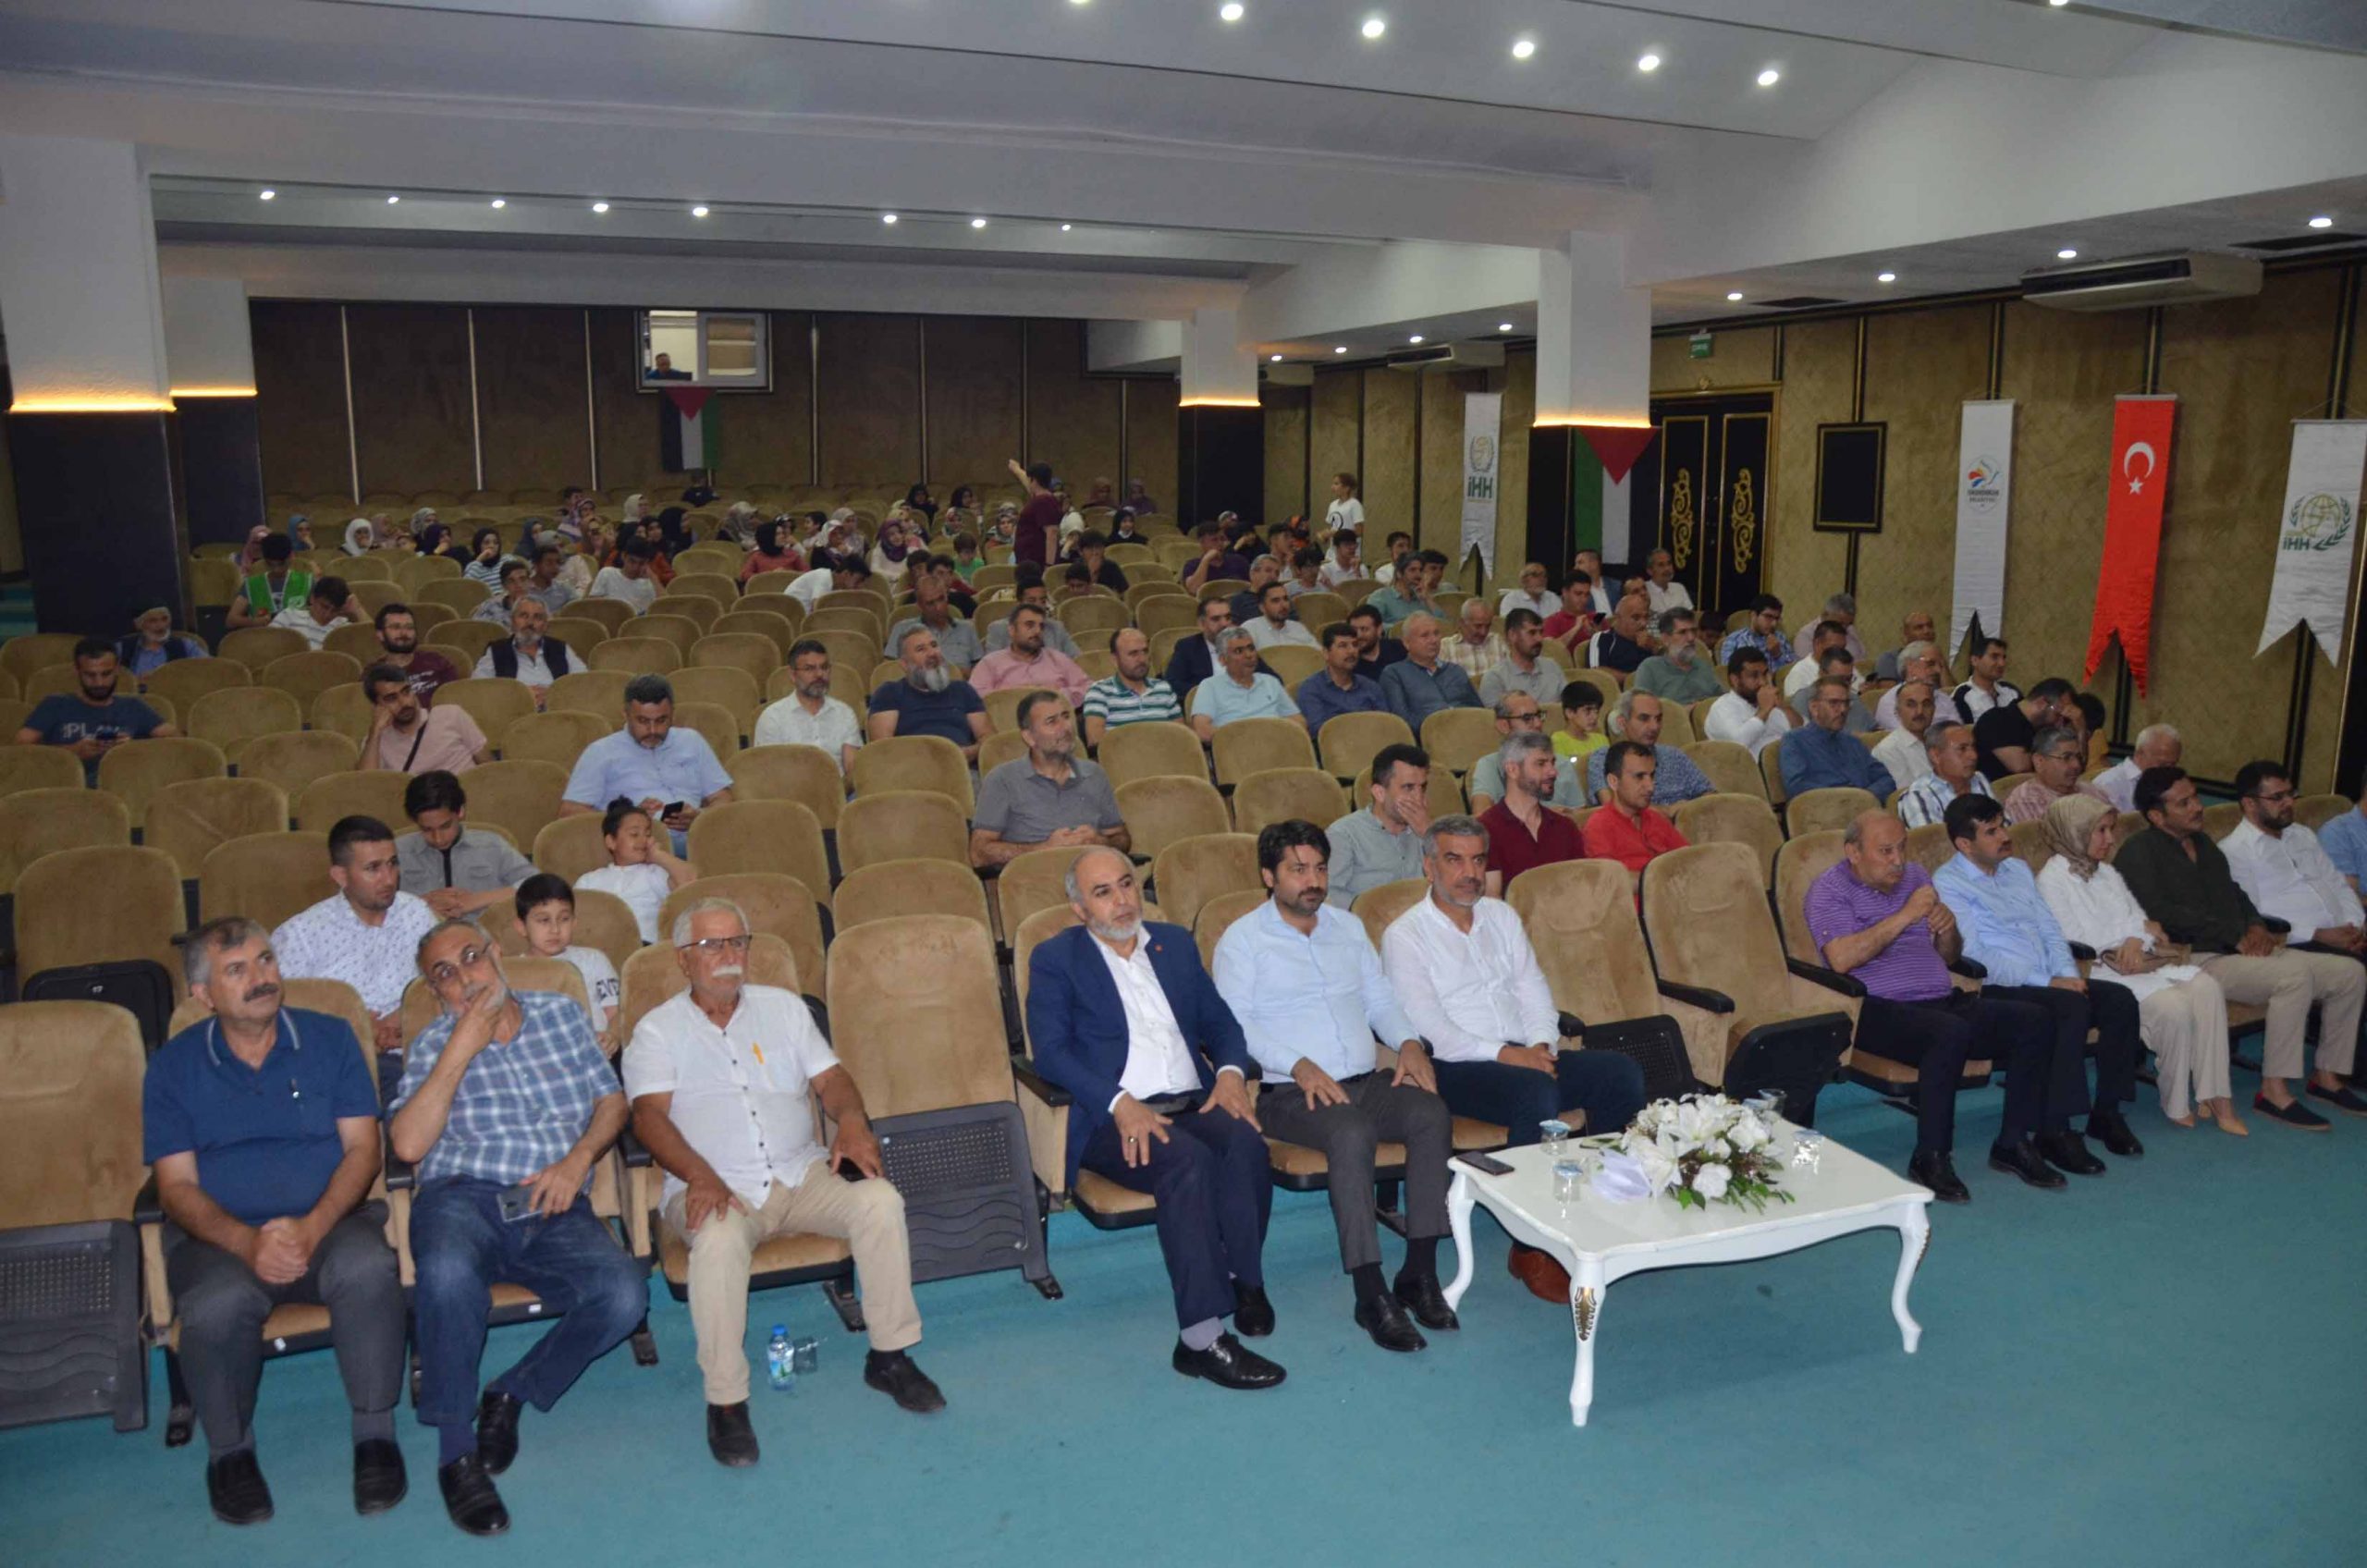 Mavi Marmara’nın 12. Yıl Dönümü nedeniyle Anma Programı Düzenlendi